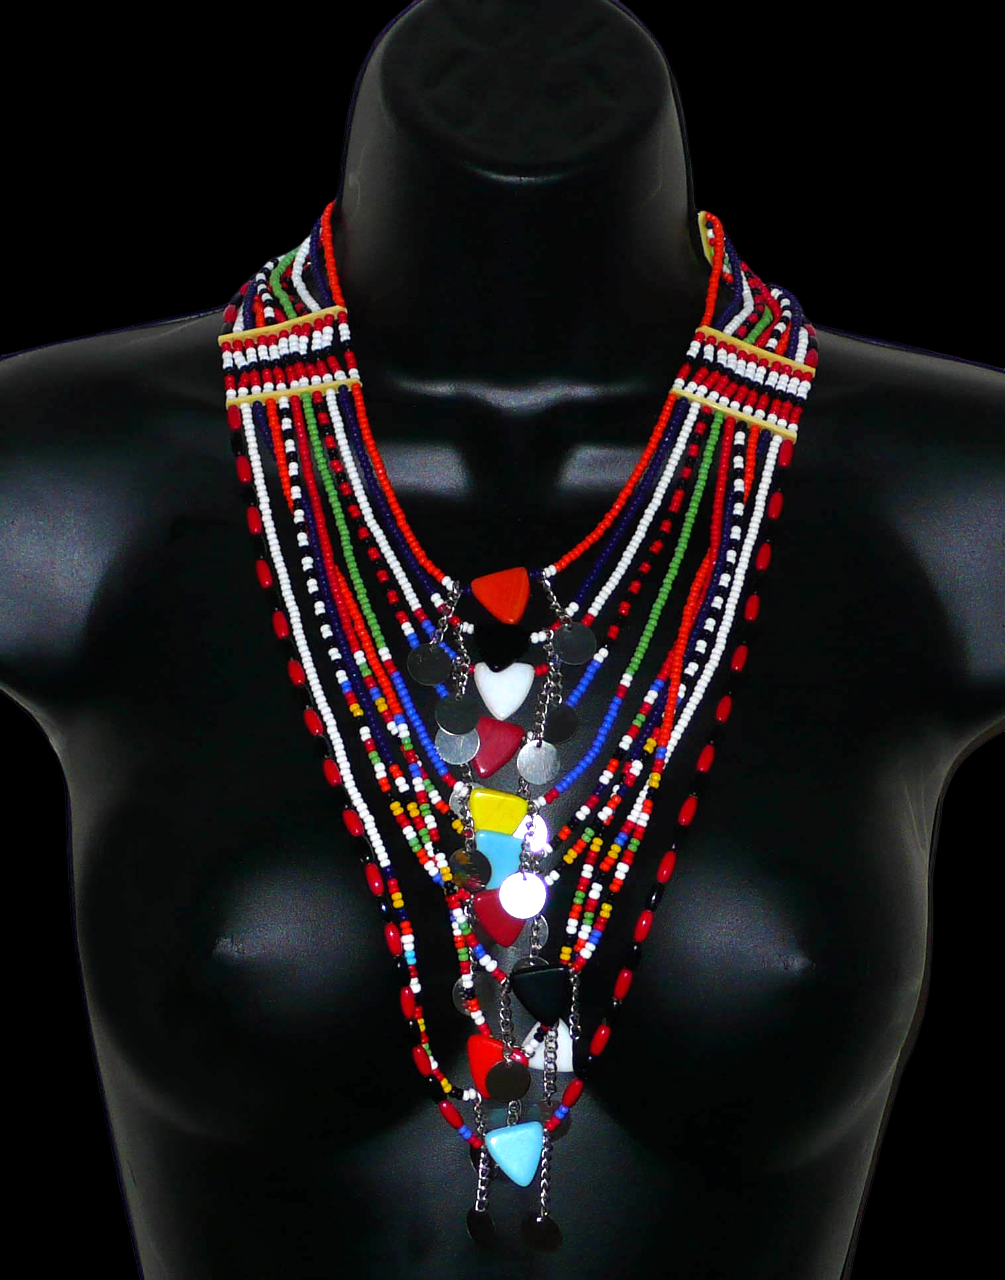 Collier africain traditionnel Massai composé de onze rangées de perles de rocaille et de plastique multicolores. Des perles triangulaires colorées et des pastilles en métal décorent le collier en son centre. Il mesure 38 cm de long, avec une longueur de tour de cou de 46 cm. Photographié sur un mannequin. Timeless Fineries